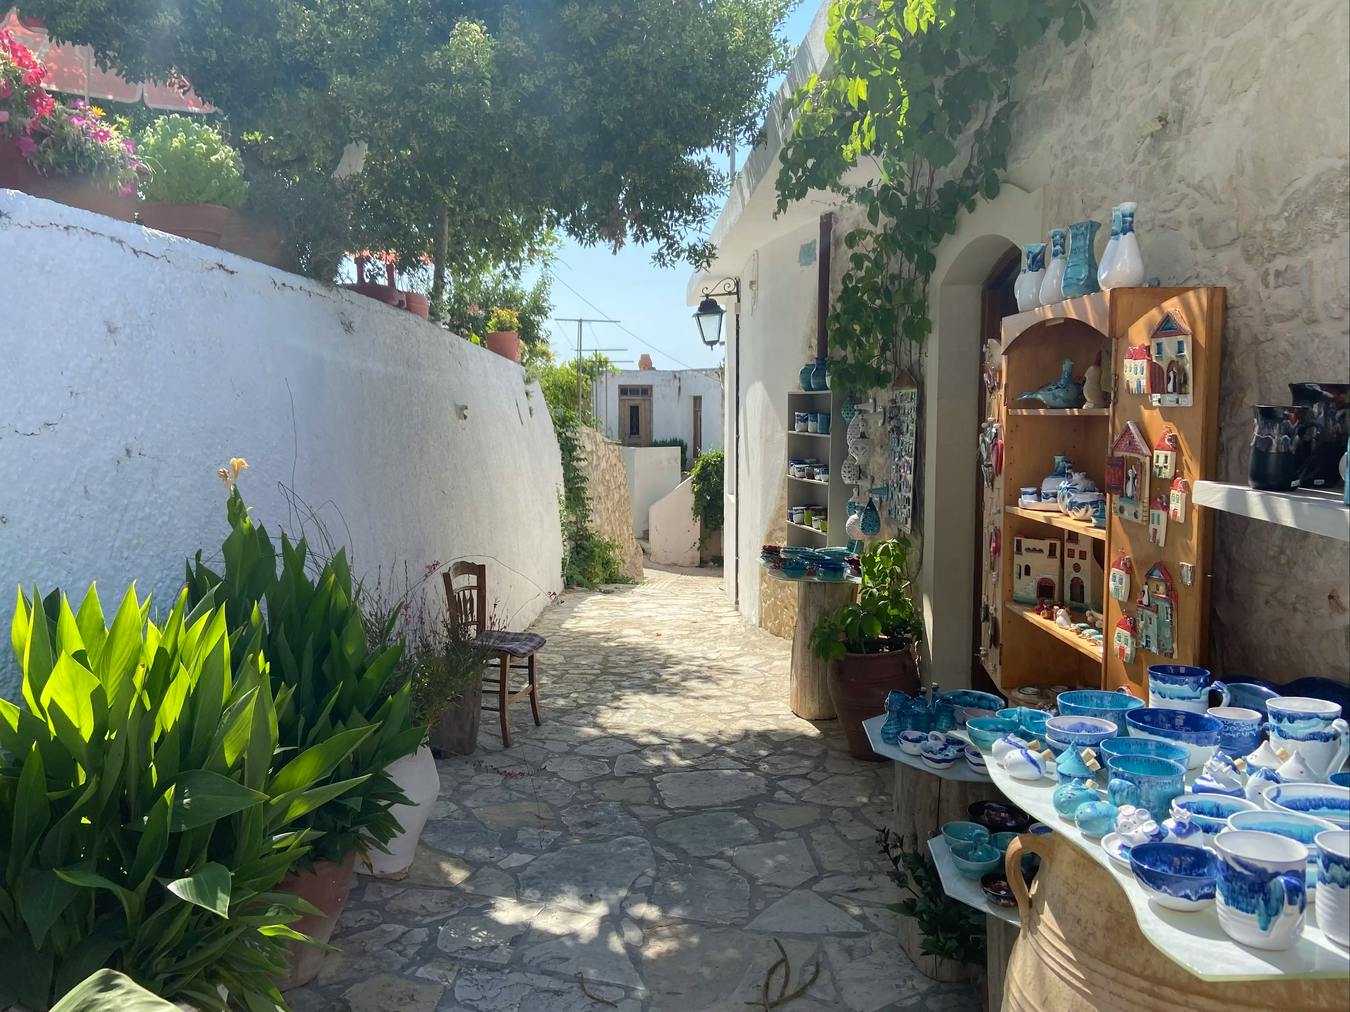 Una exposición de artesanía en una de las calles del pueblo de Margaritas, Creta.